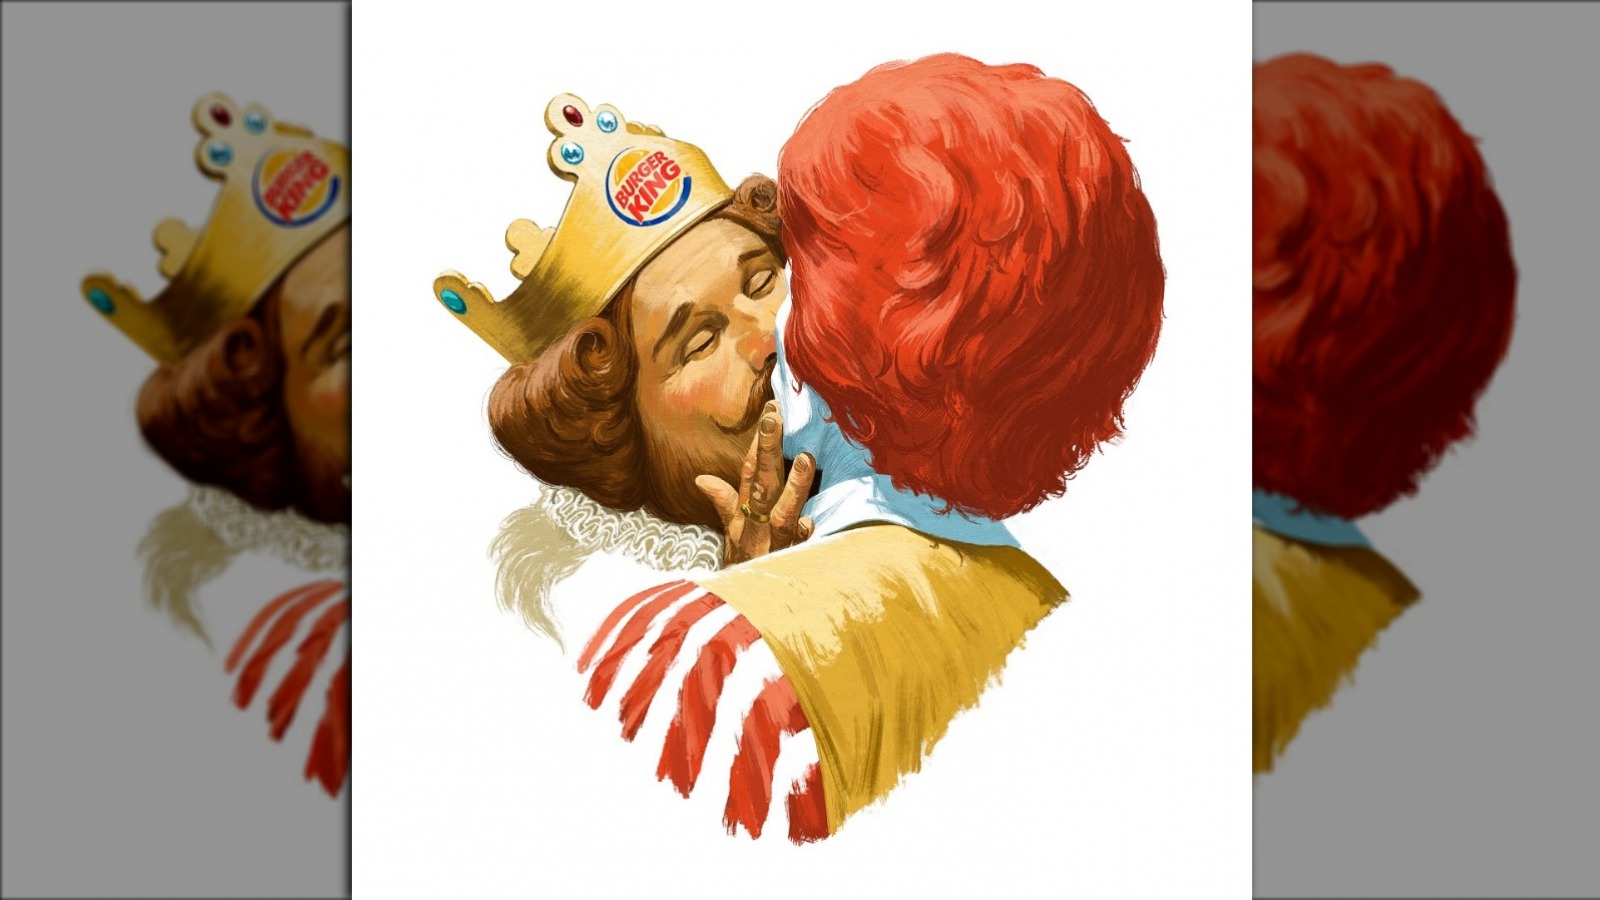 The Reason The Burger King Mascot Just Kissed Ronald McDonald